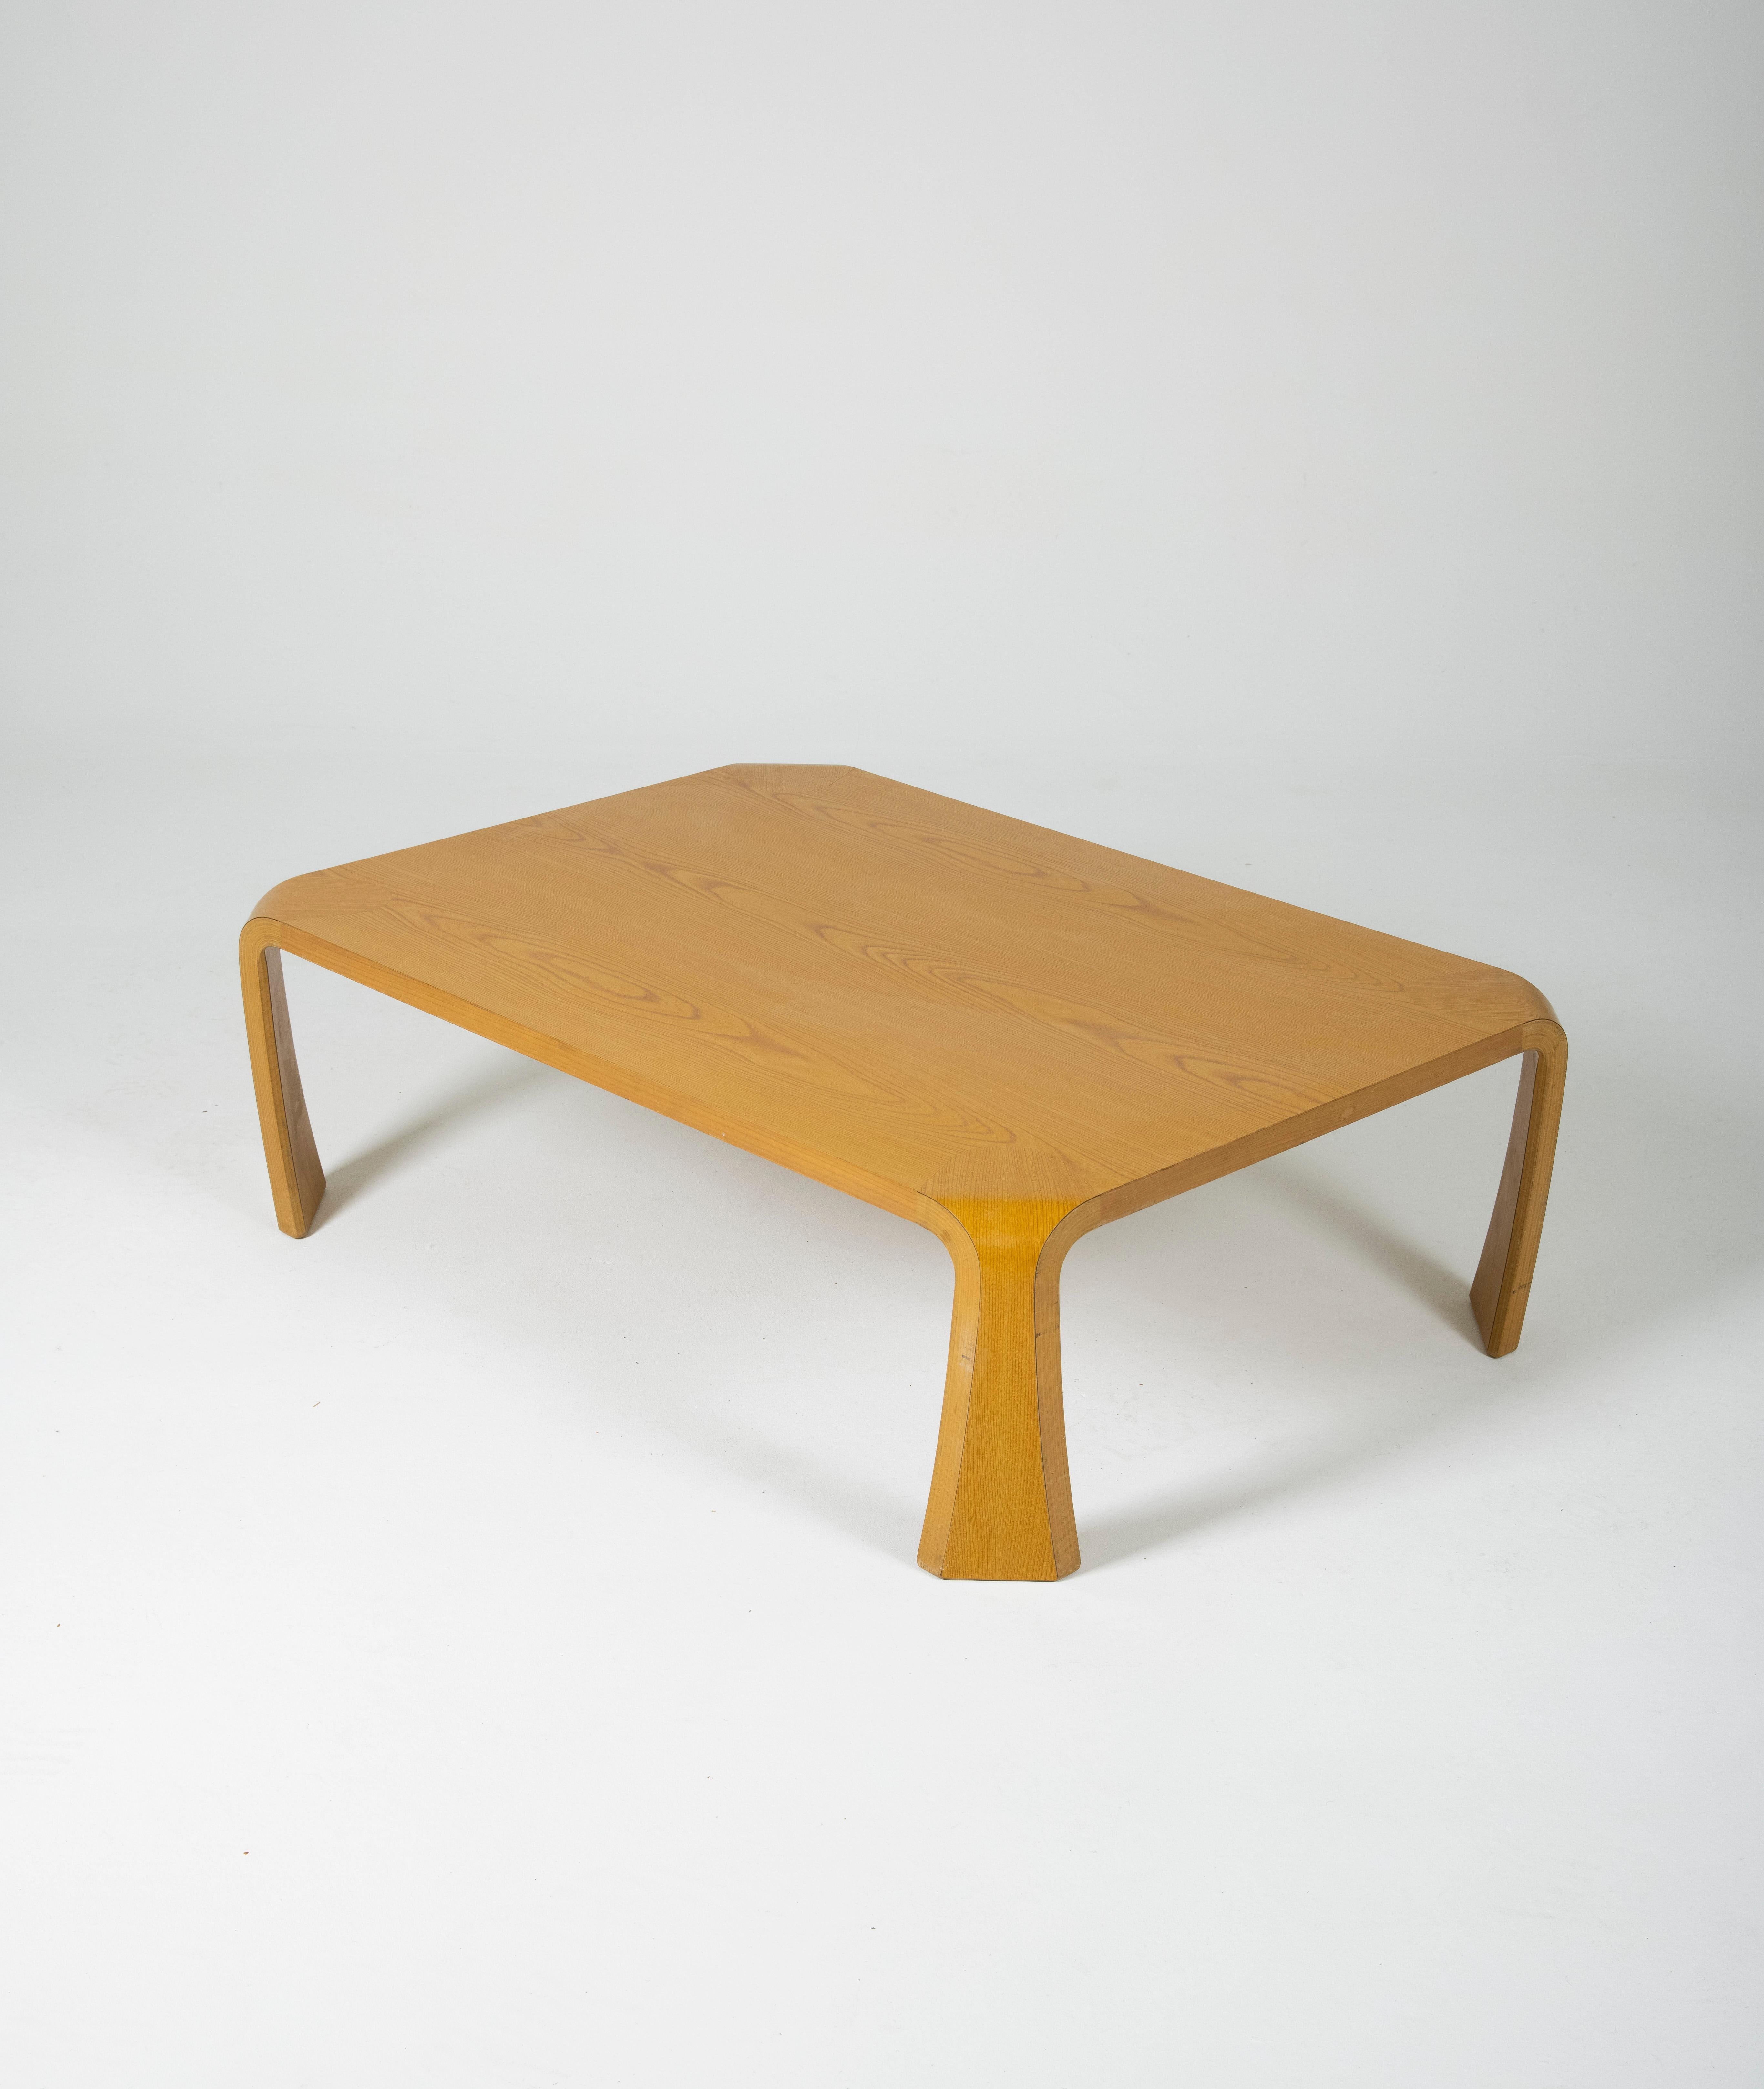 Table basse Saburo Inui pour Tendo Mokko au Japon dans les années 1960. Plateau rectangulaire en bois mélaminé et pieds galbés. Bon état vintage.
LP597-598